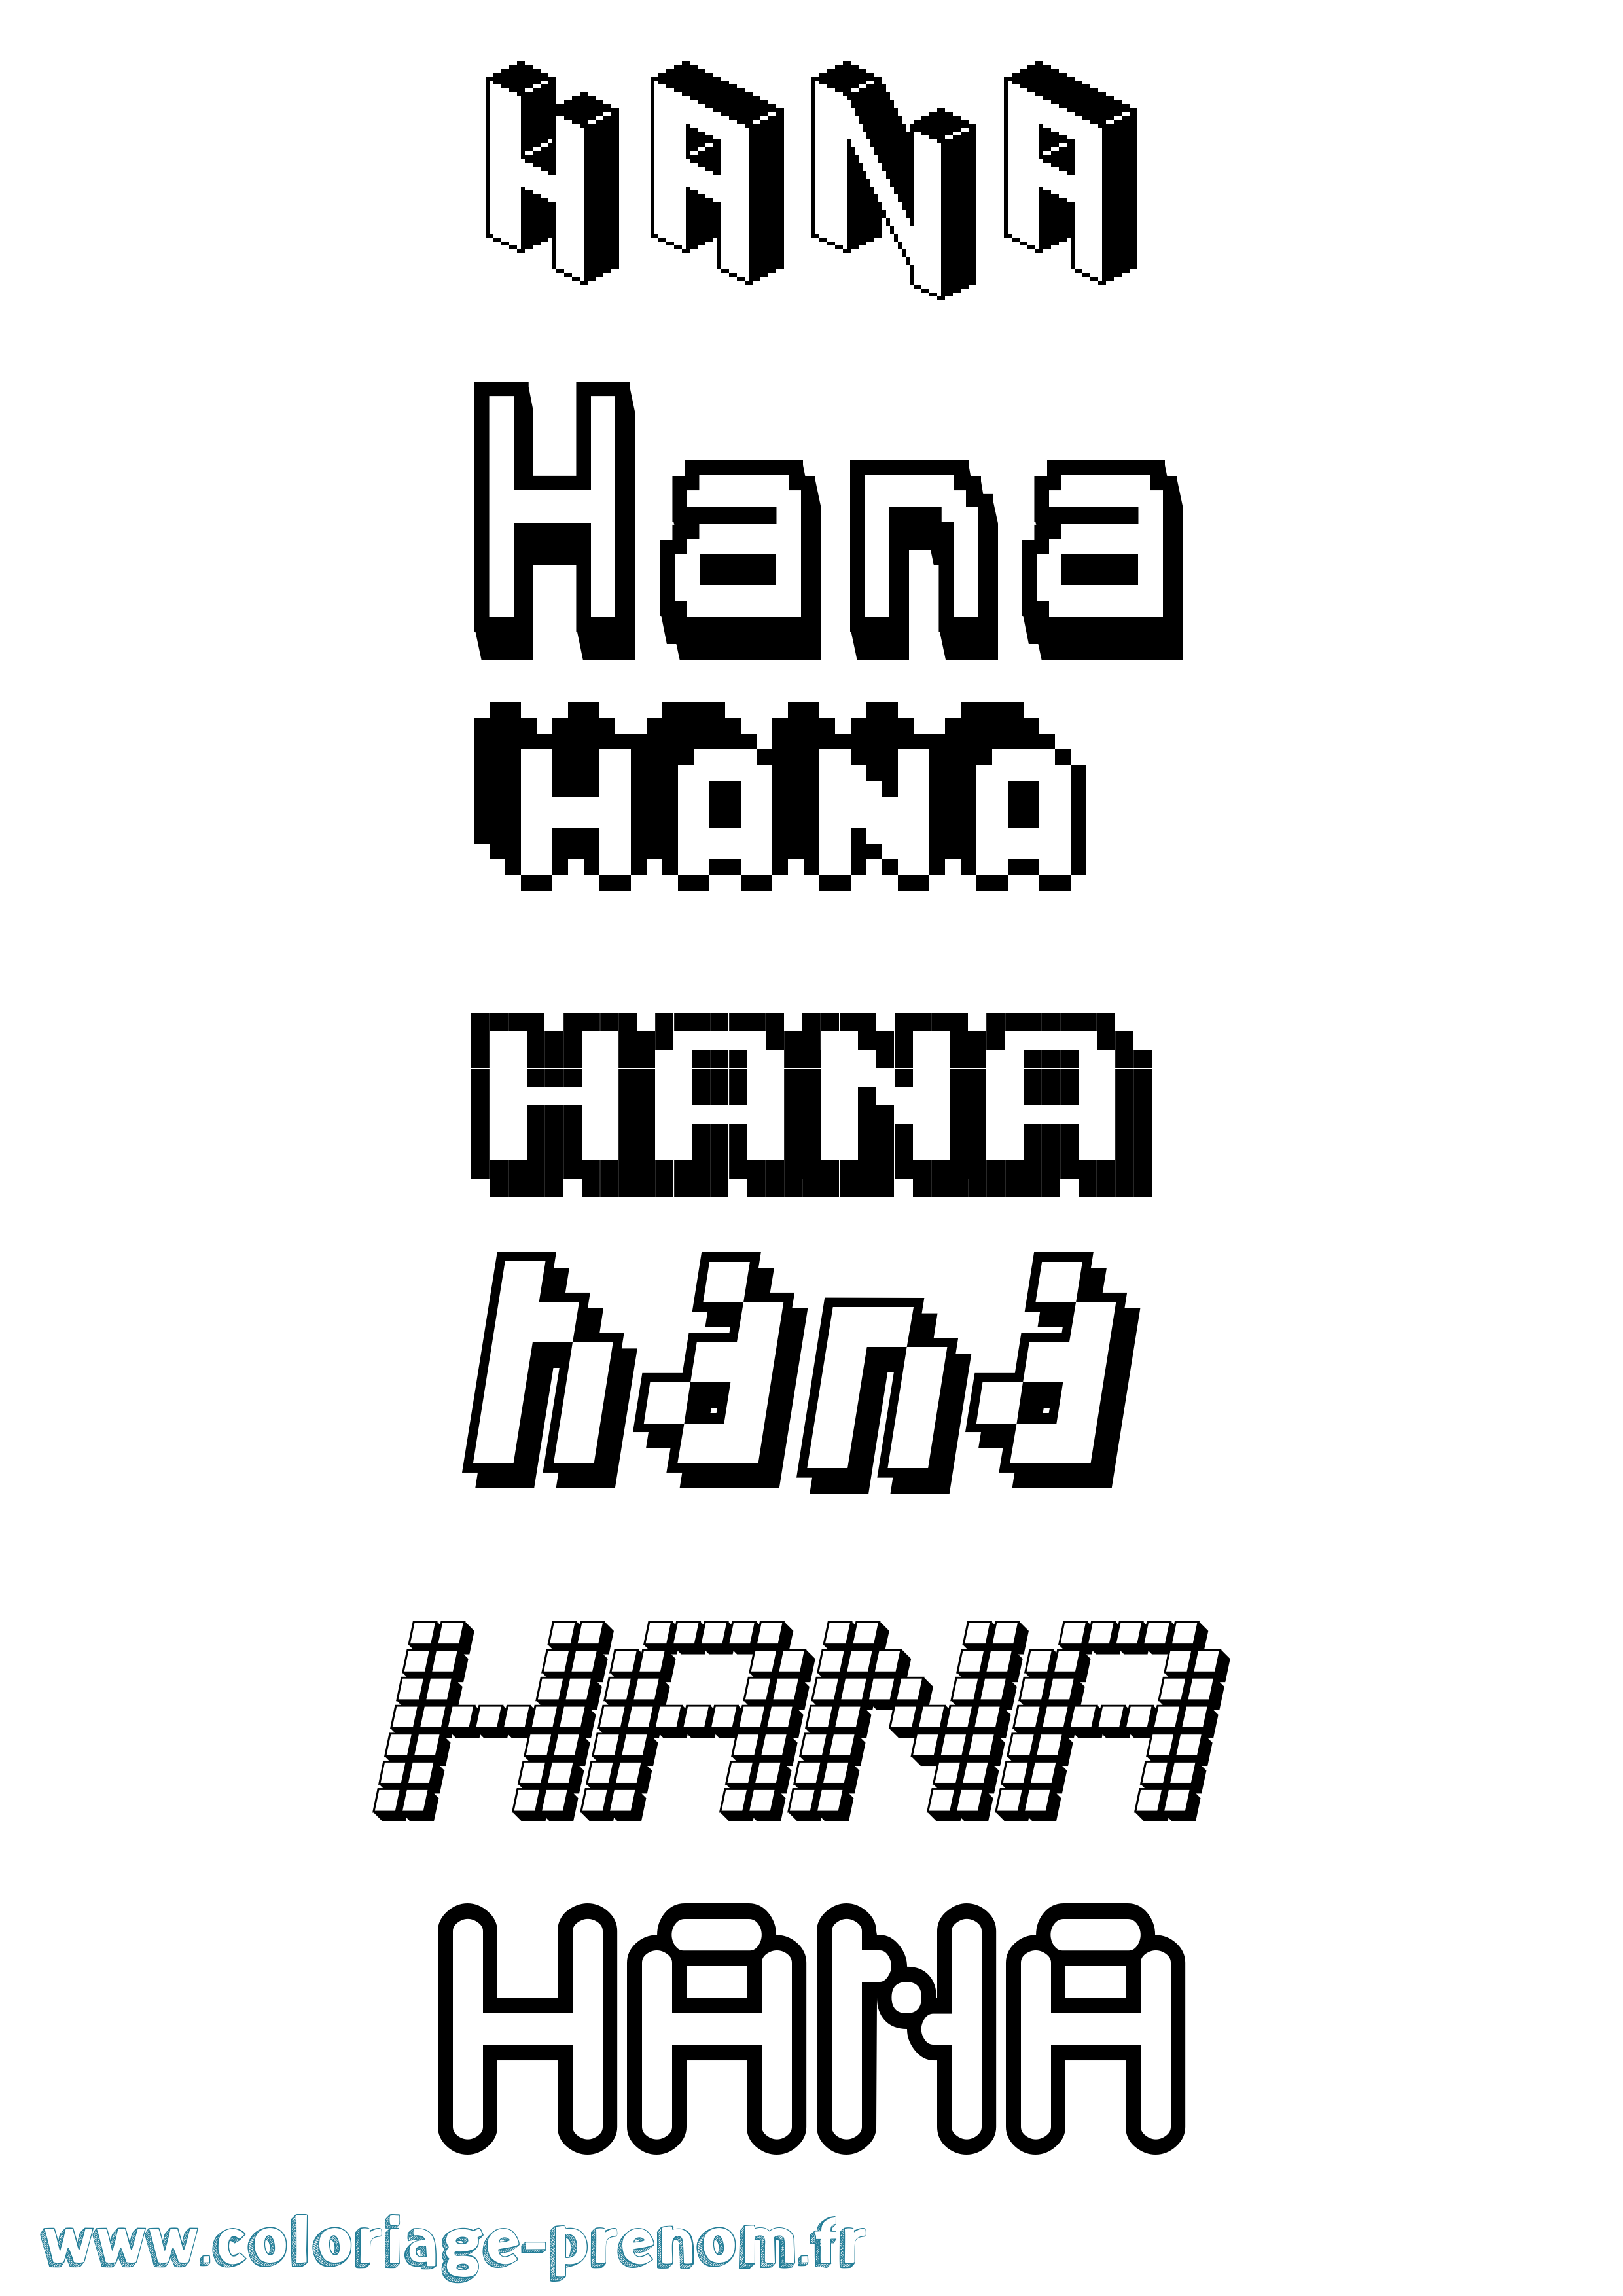 Coloriage prénom Hana Pixel